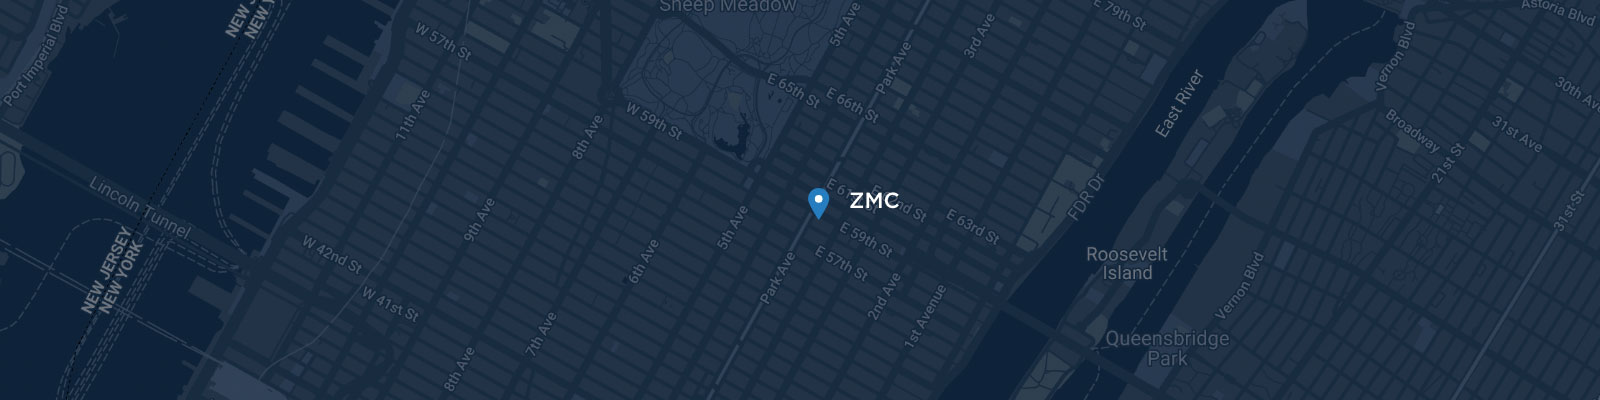 ZMC NY Office